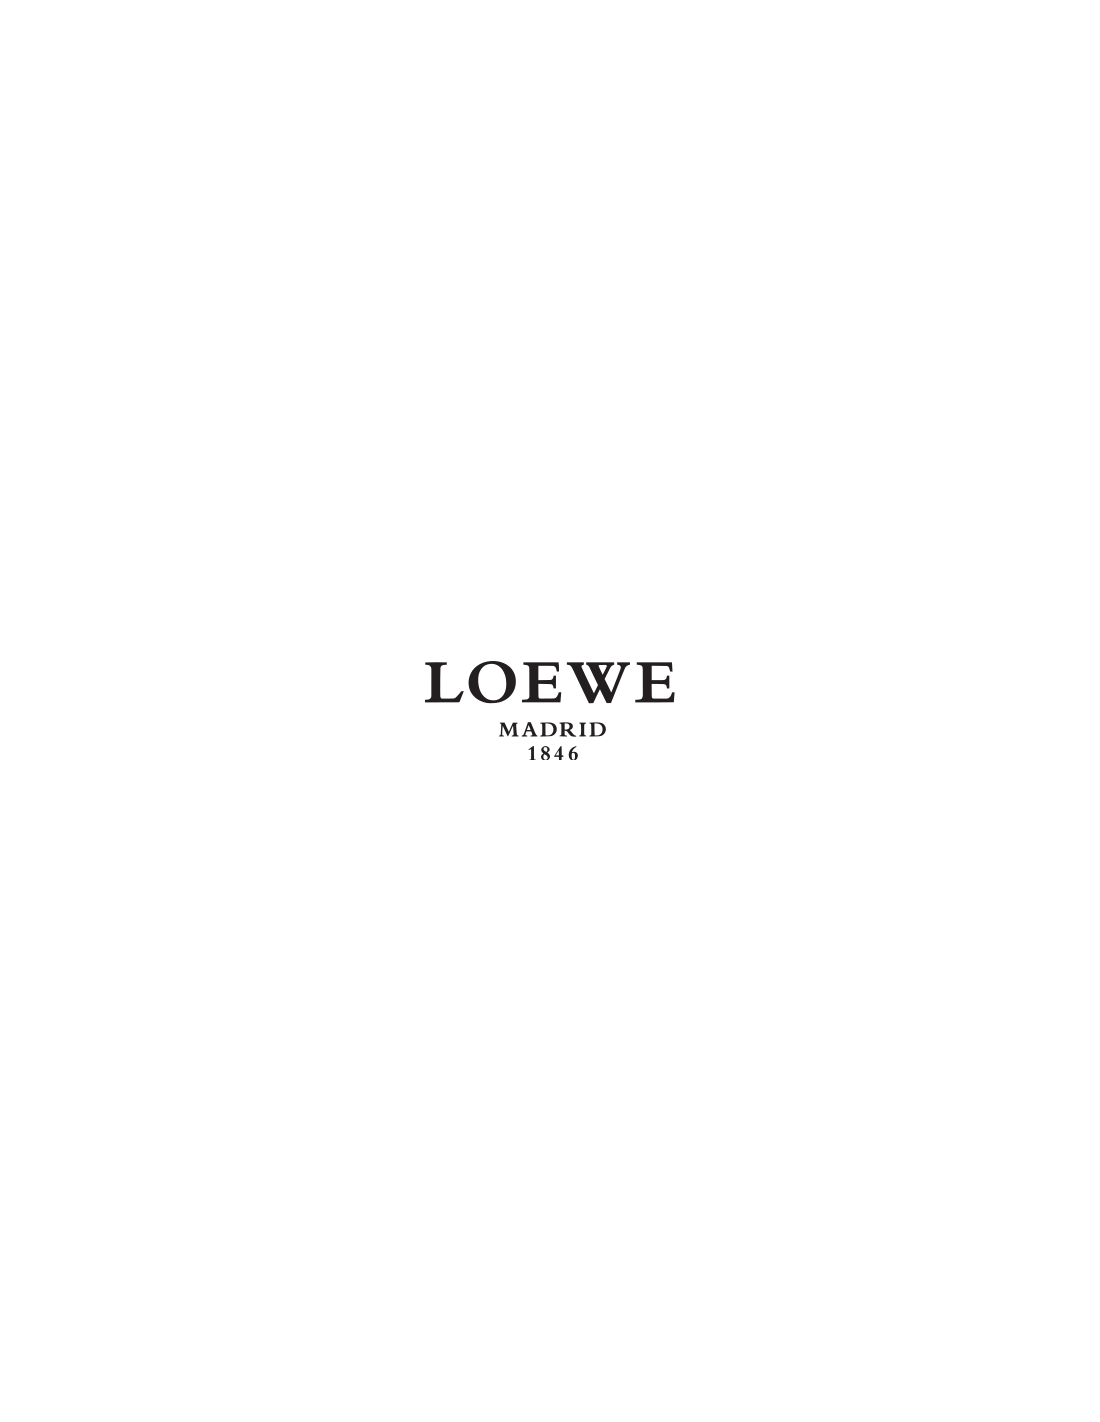 Loewe Wallpapers - Top Free Loewe Backgrounds - WallpaperAccess